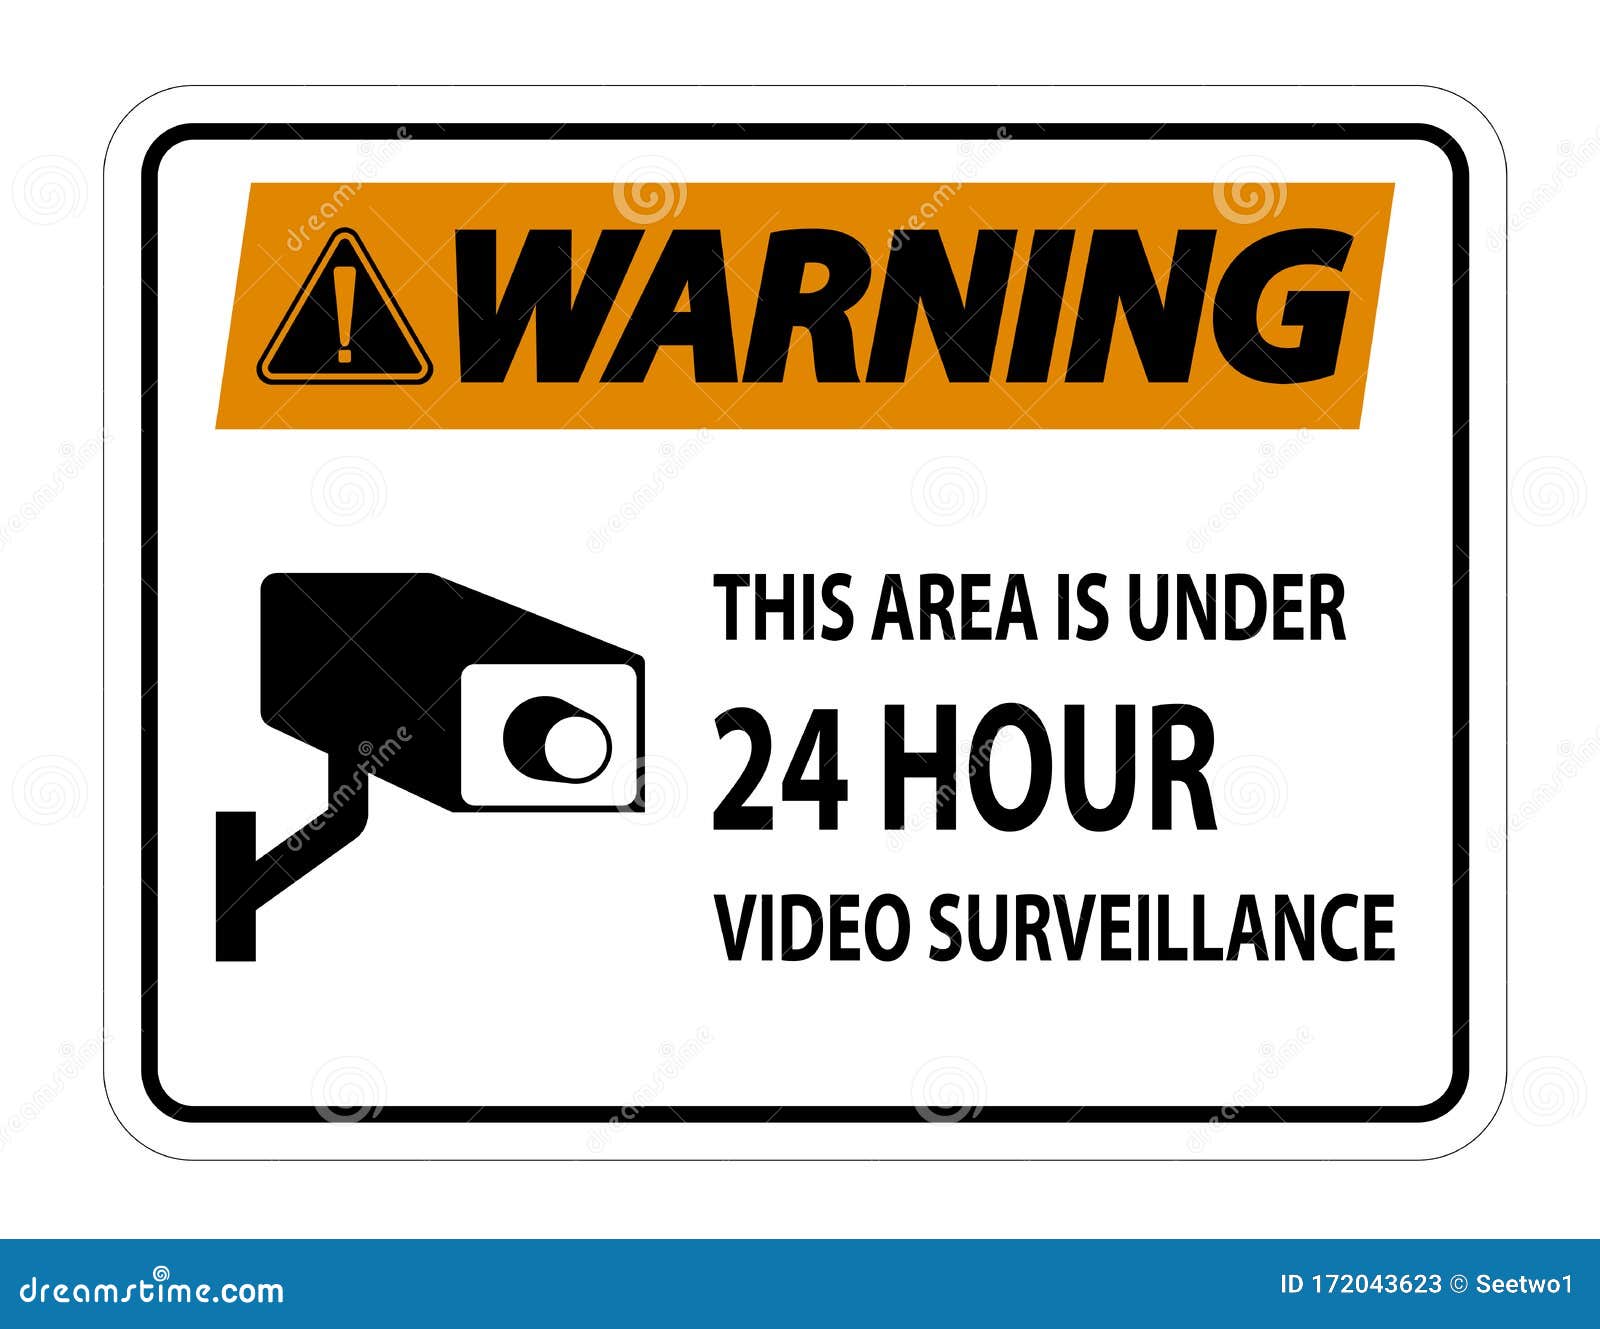 Tại khu vực này, chúng tôi mang đến cho bạn sự yên tâm tối đa về an ninh và an toàn. Với biểu tượng cảnh báo giám sát video 24 giờ khu vực này, bạn sẽ luôn được cảnh báo kịp thời khi có nguy cơ. Hãy xem hình ảnh để biết thêm về sản phẩm này.